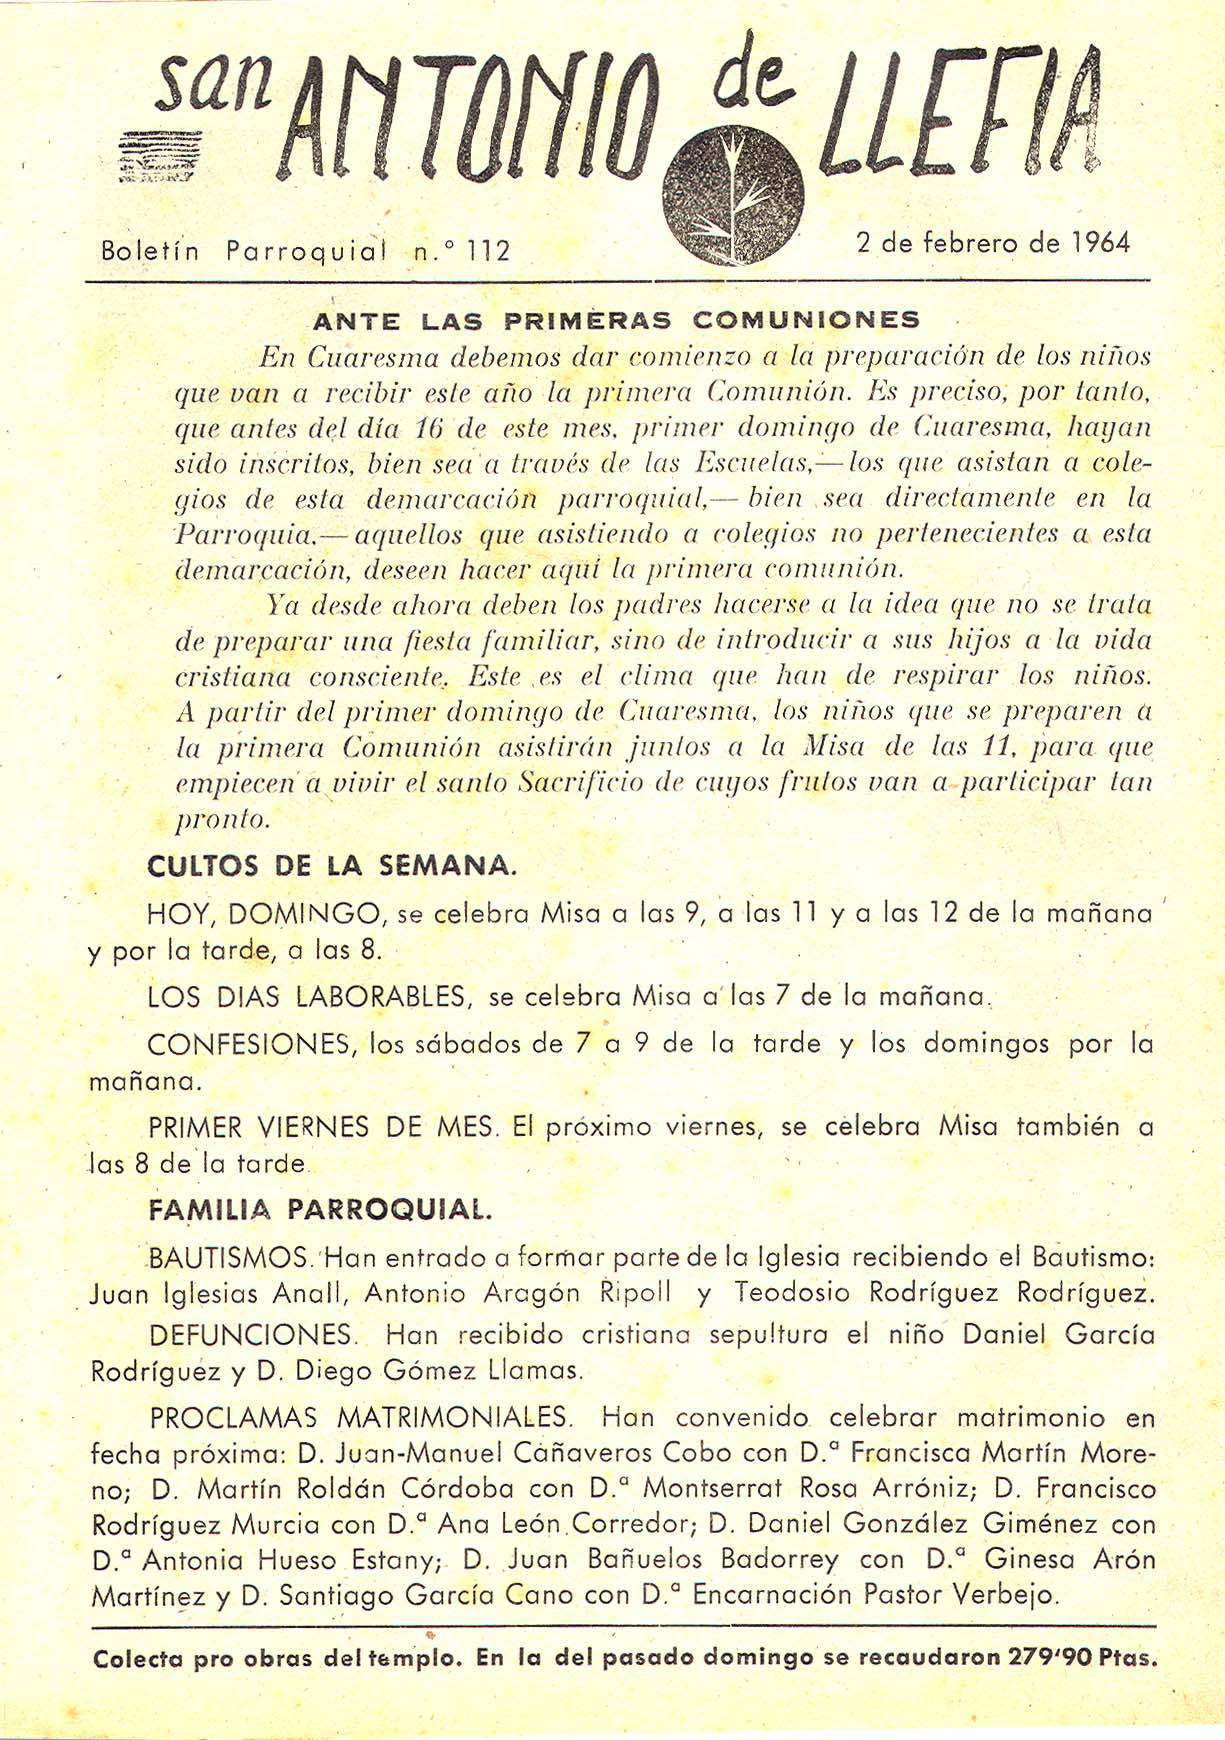 1964 Boletin parroquial nÃºm 112